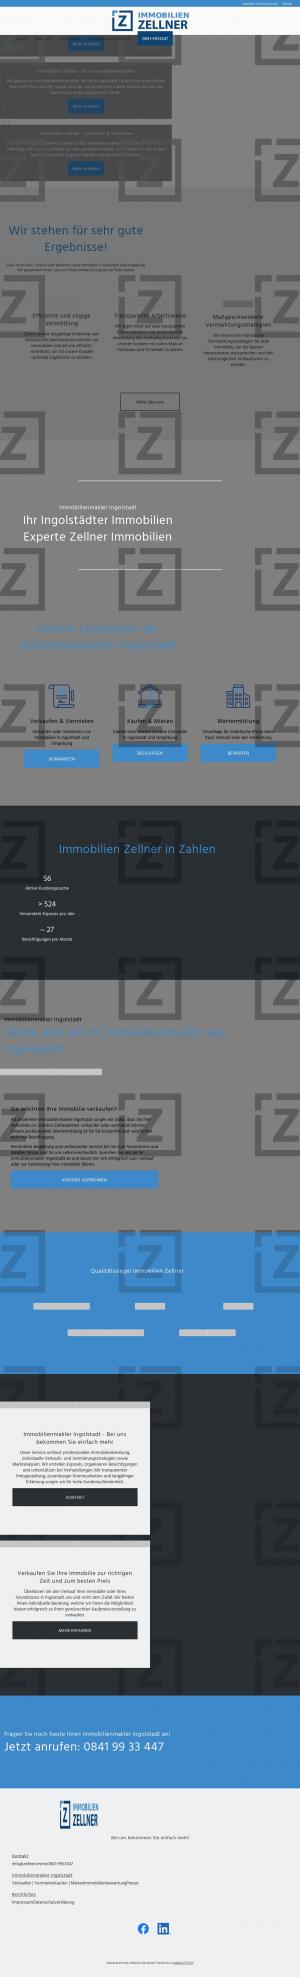 www.zellner.immo